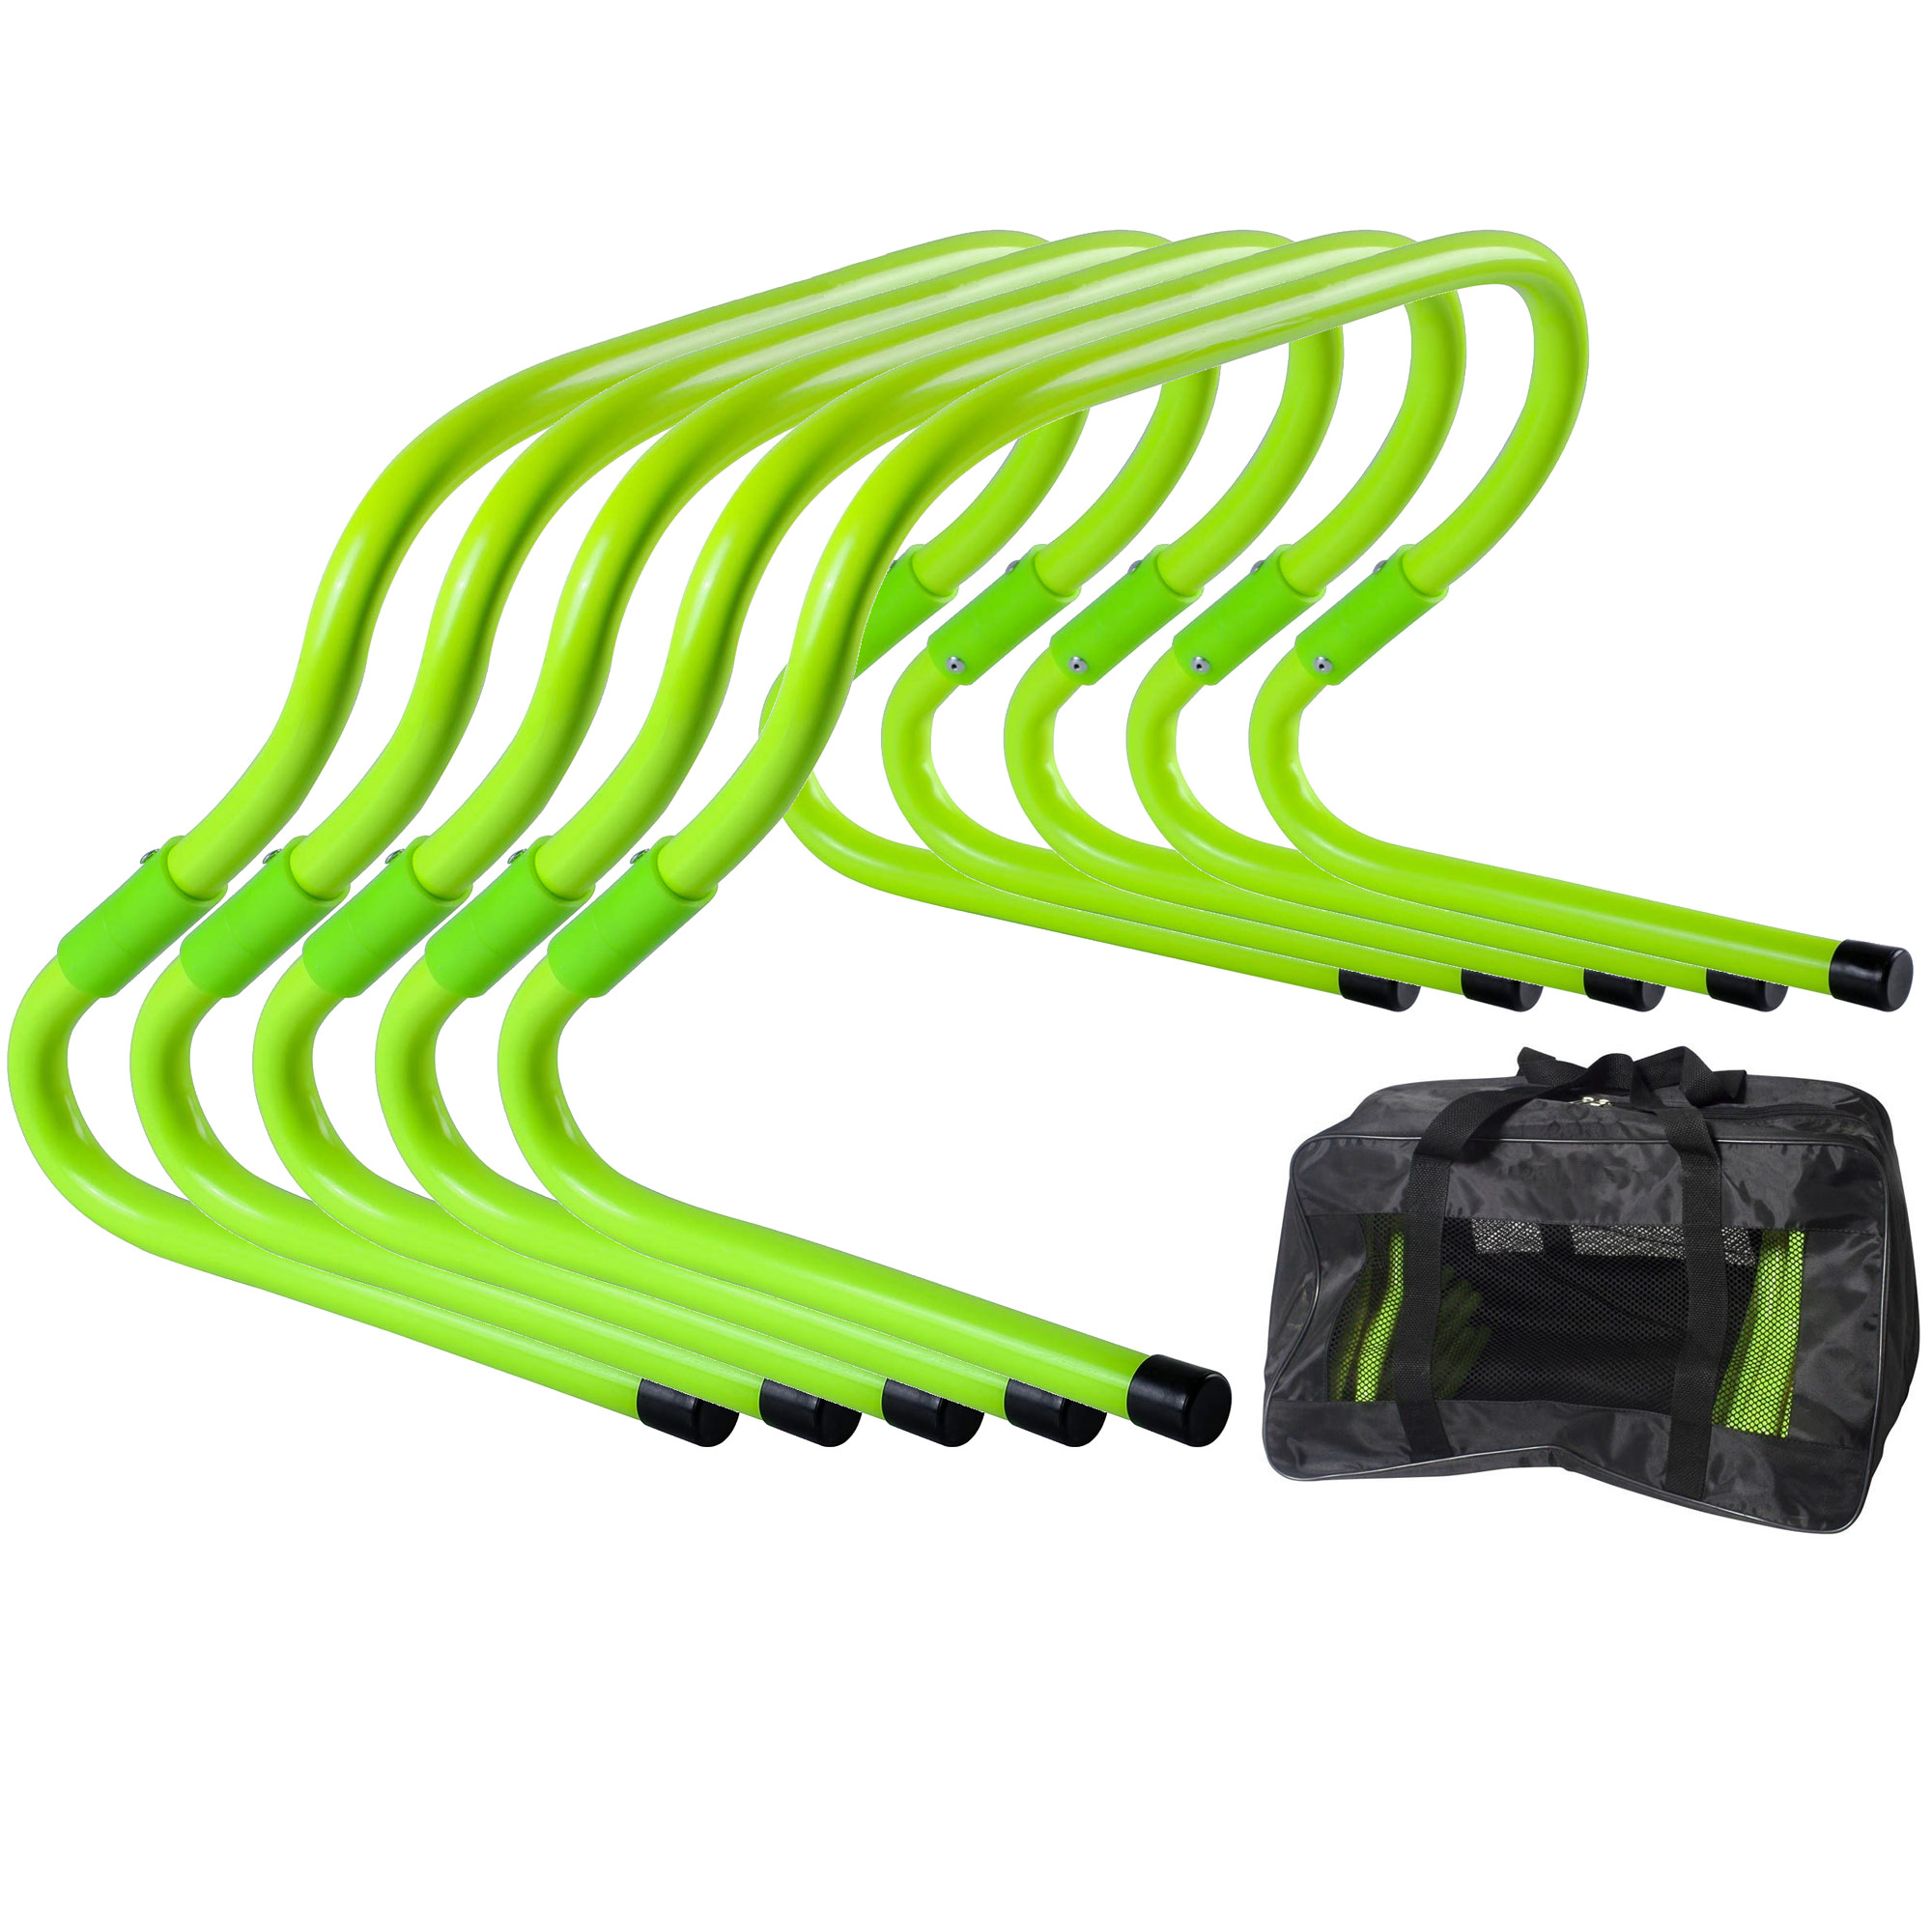 Барьеры тренировочные Sportex набор из 5 штук в сумке, 15-30см E33553-ST зеленый Neon 2000_2000